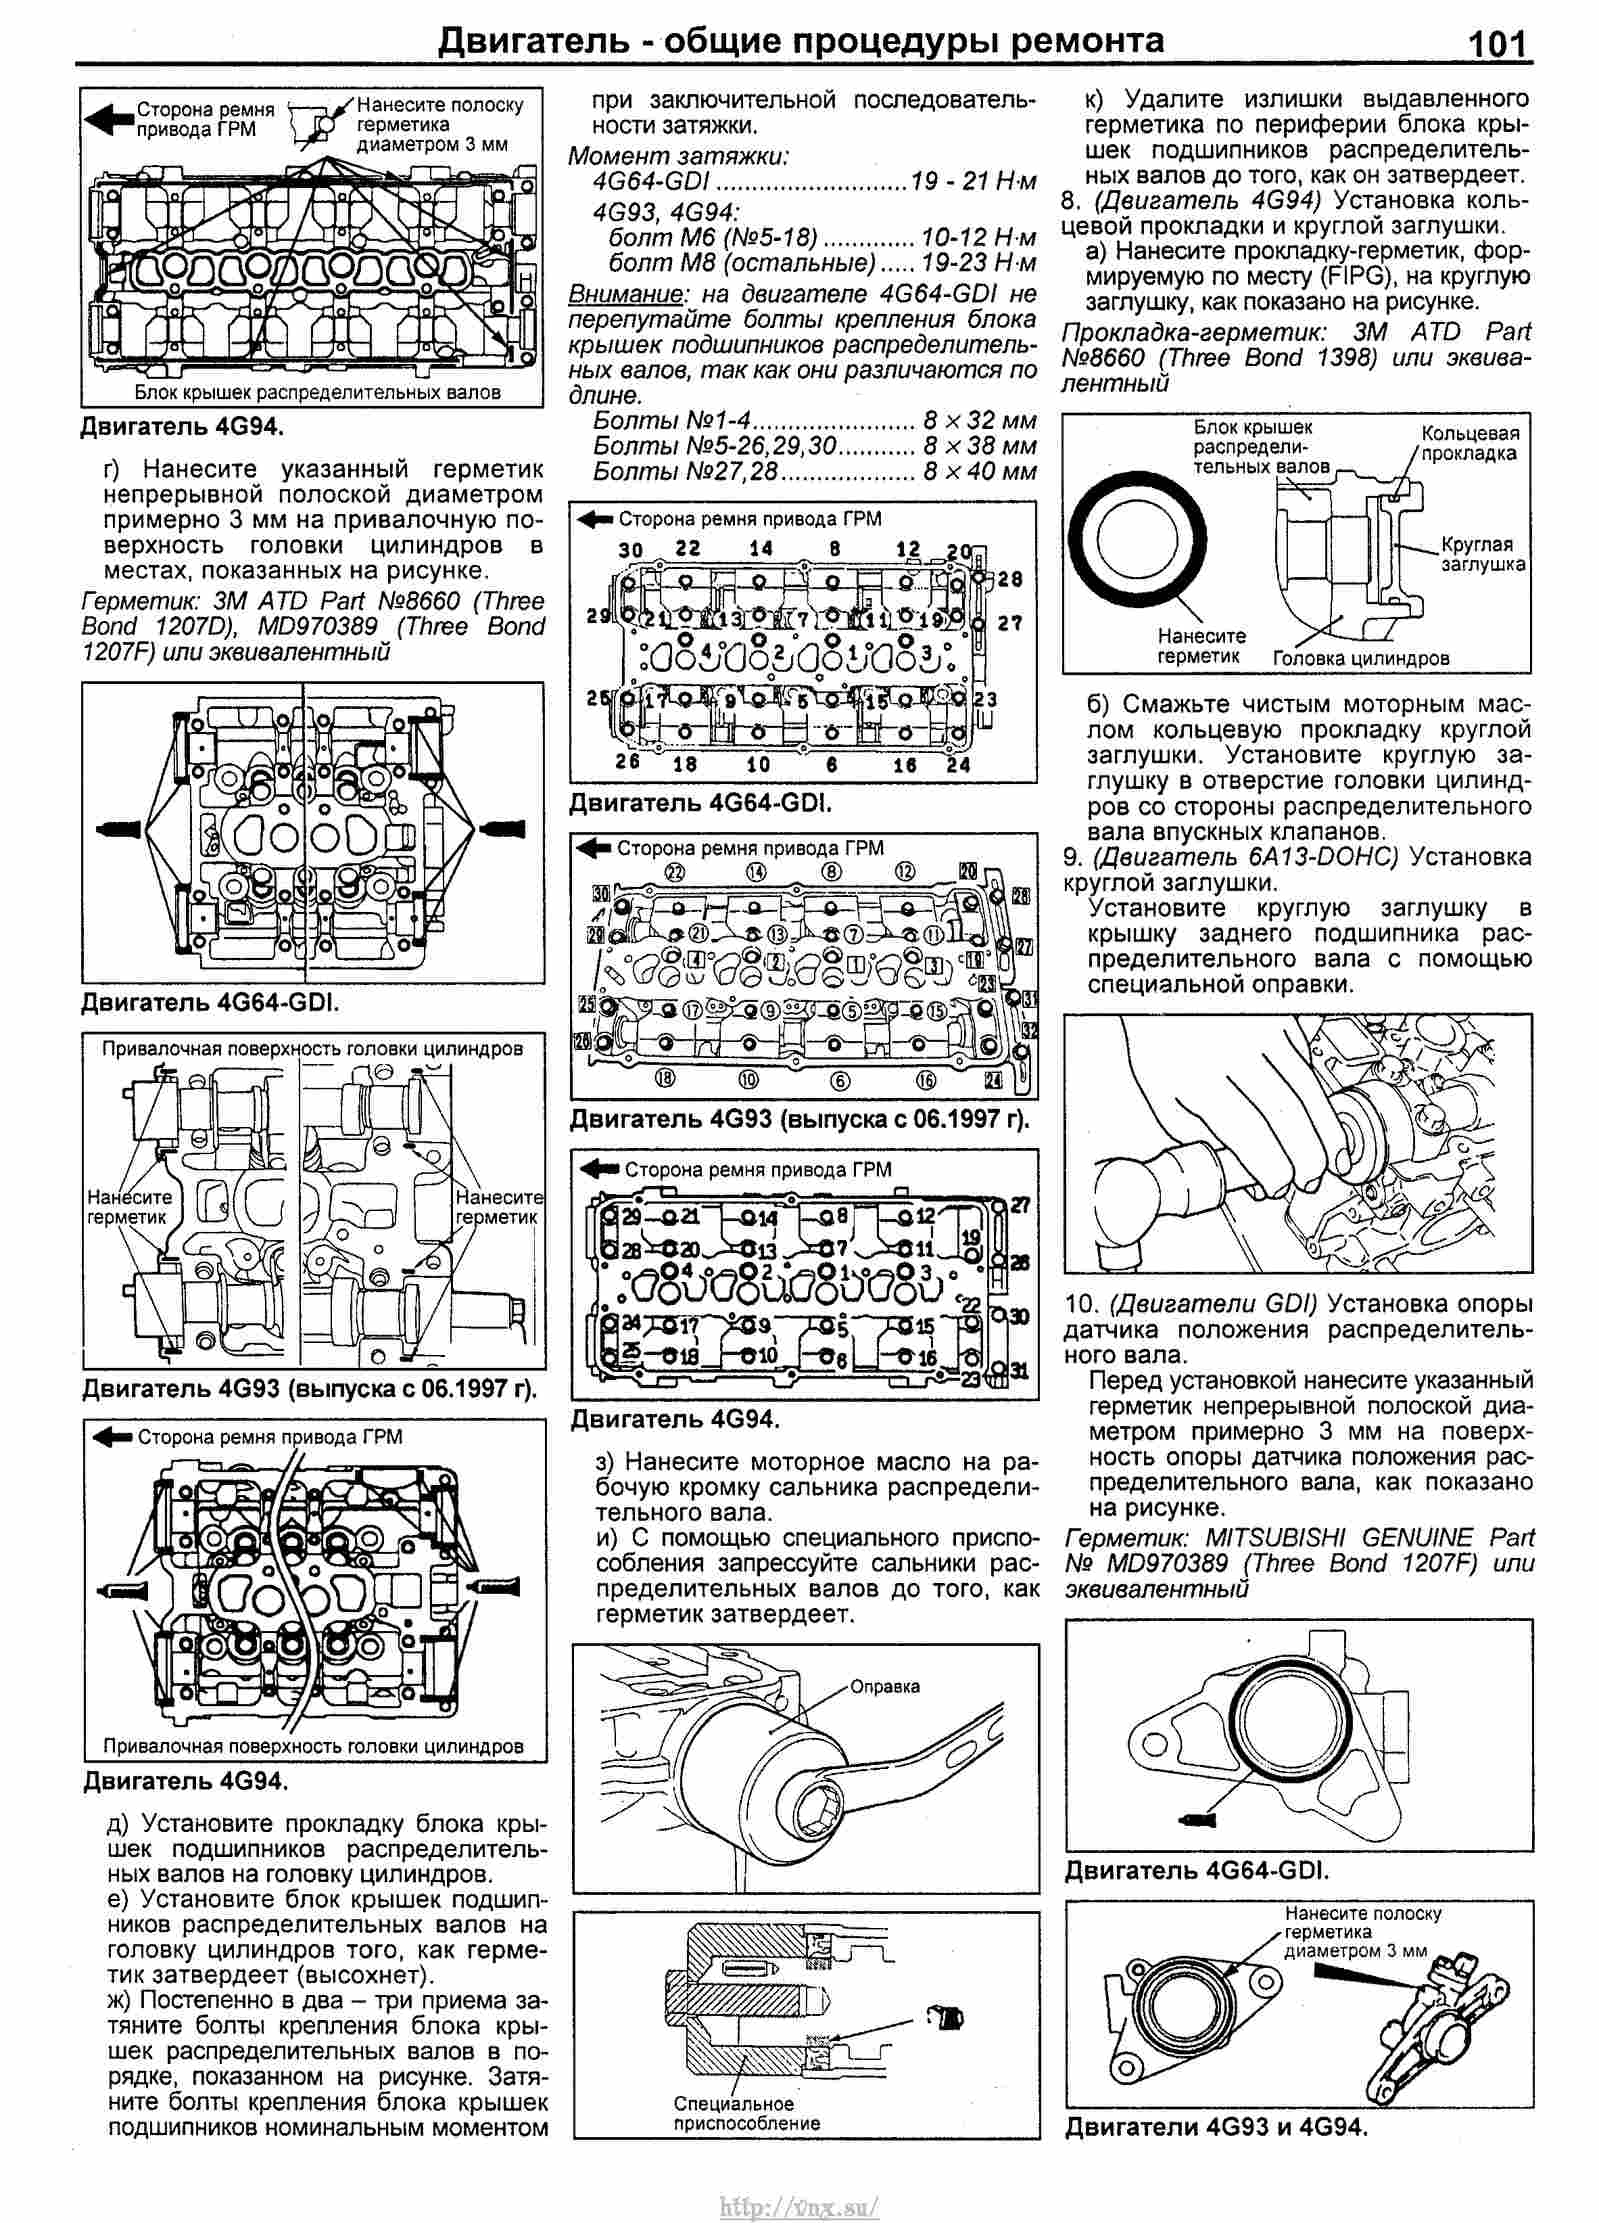 Двигатель 4a91 mitsubishi: характеристики, причины масложора, ремонт, тюнинг, отзывы